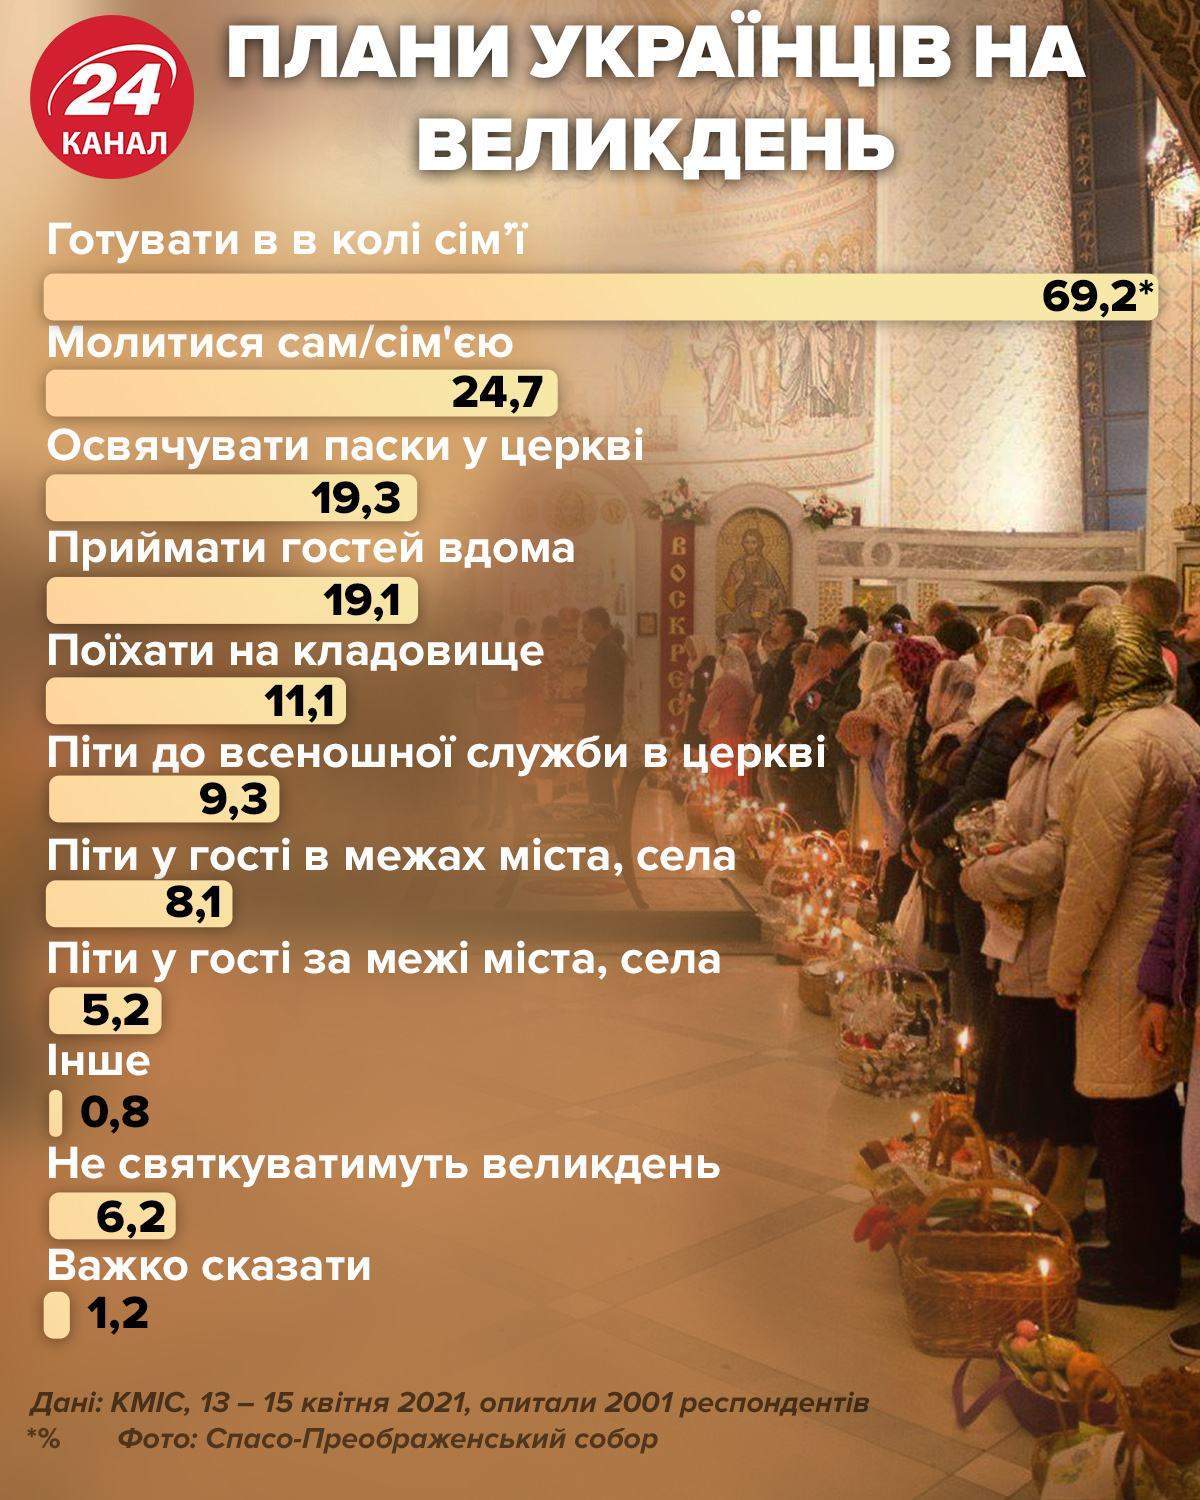 Пасхальные планы украинцев в 2021 году / Инфографика 24 канала